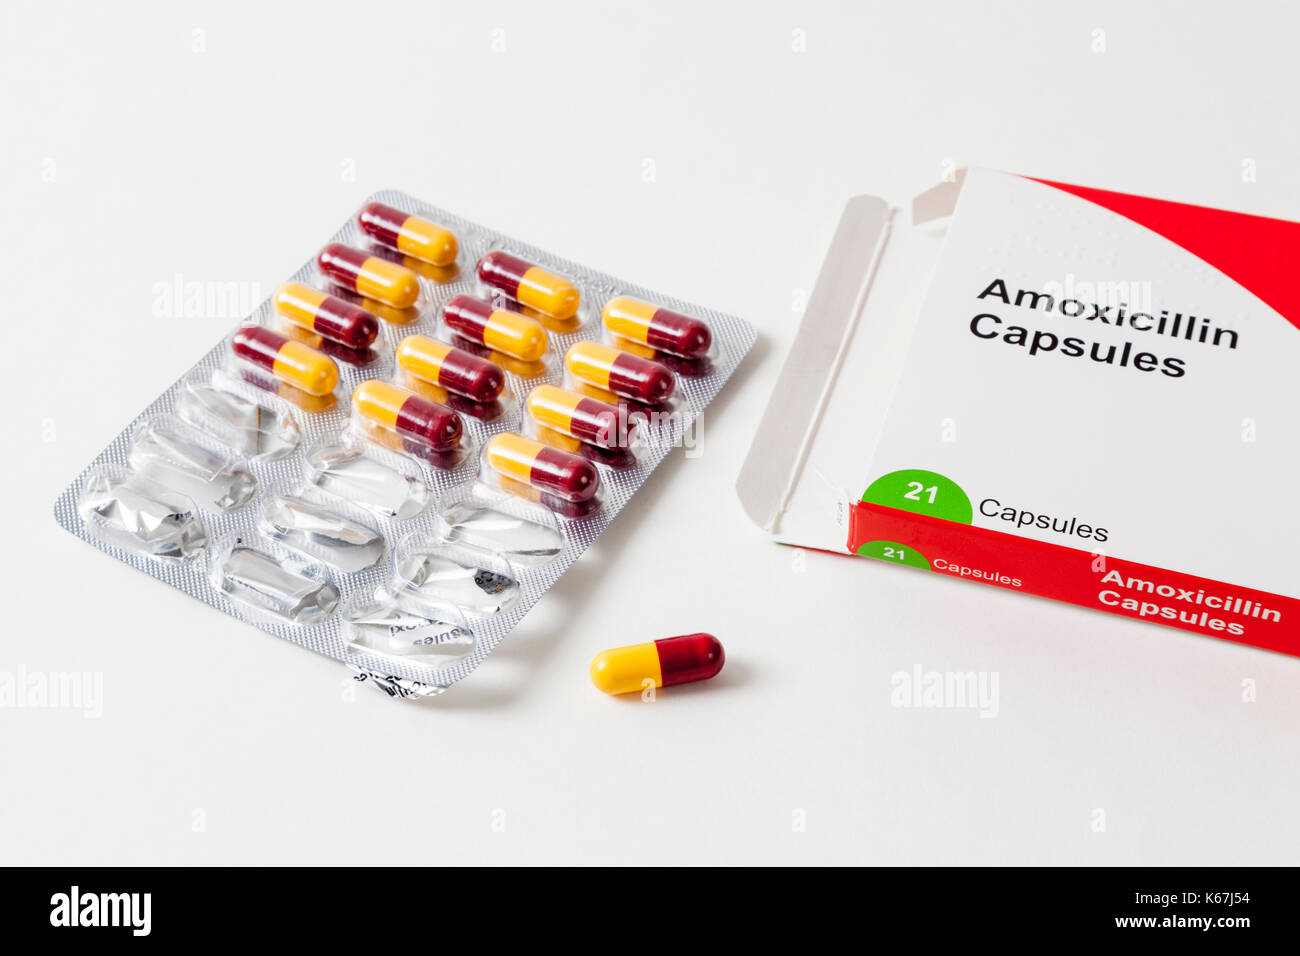 Les comprimés d'antibiotiques : un paquet de 21 gélules d'amoxicilline 500mg Antibiotiques avec une capsule retirée de la plaquette Banque D'Images